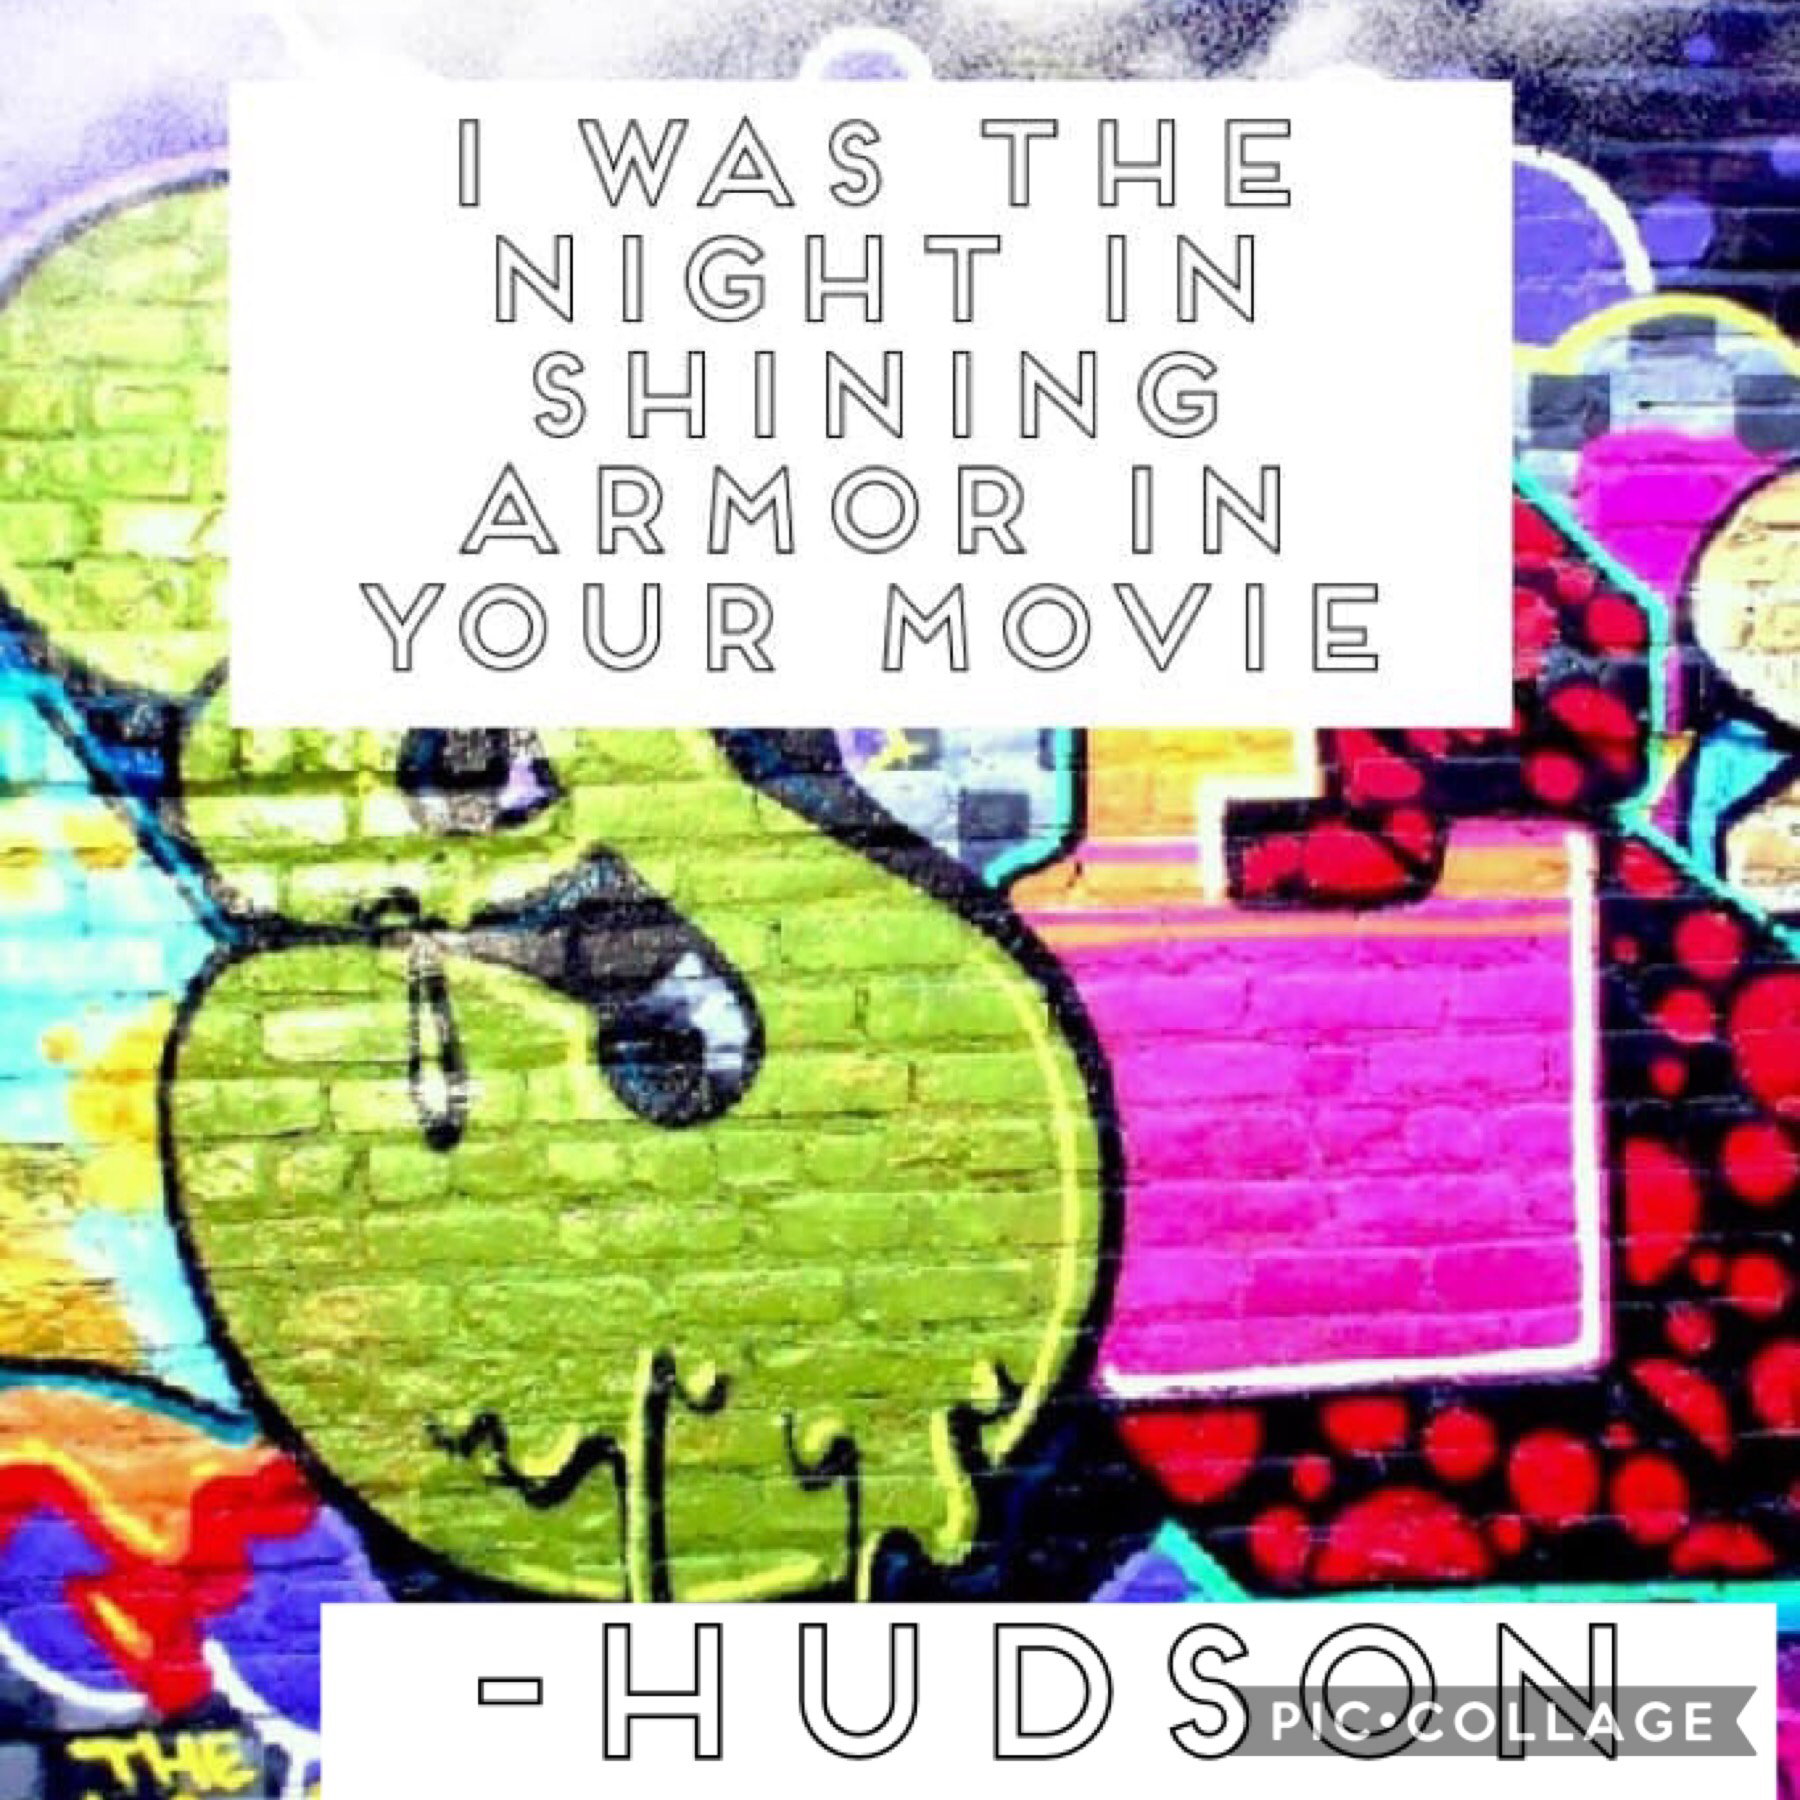 Iconic, Hudson. 🙄